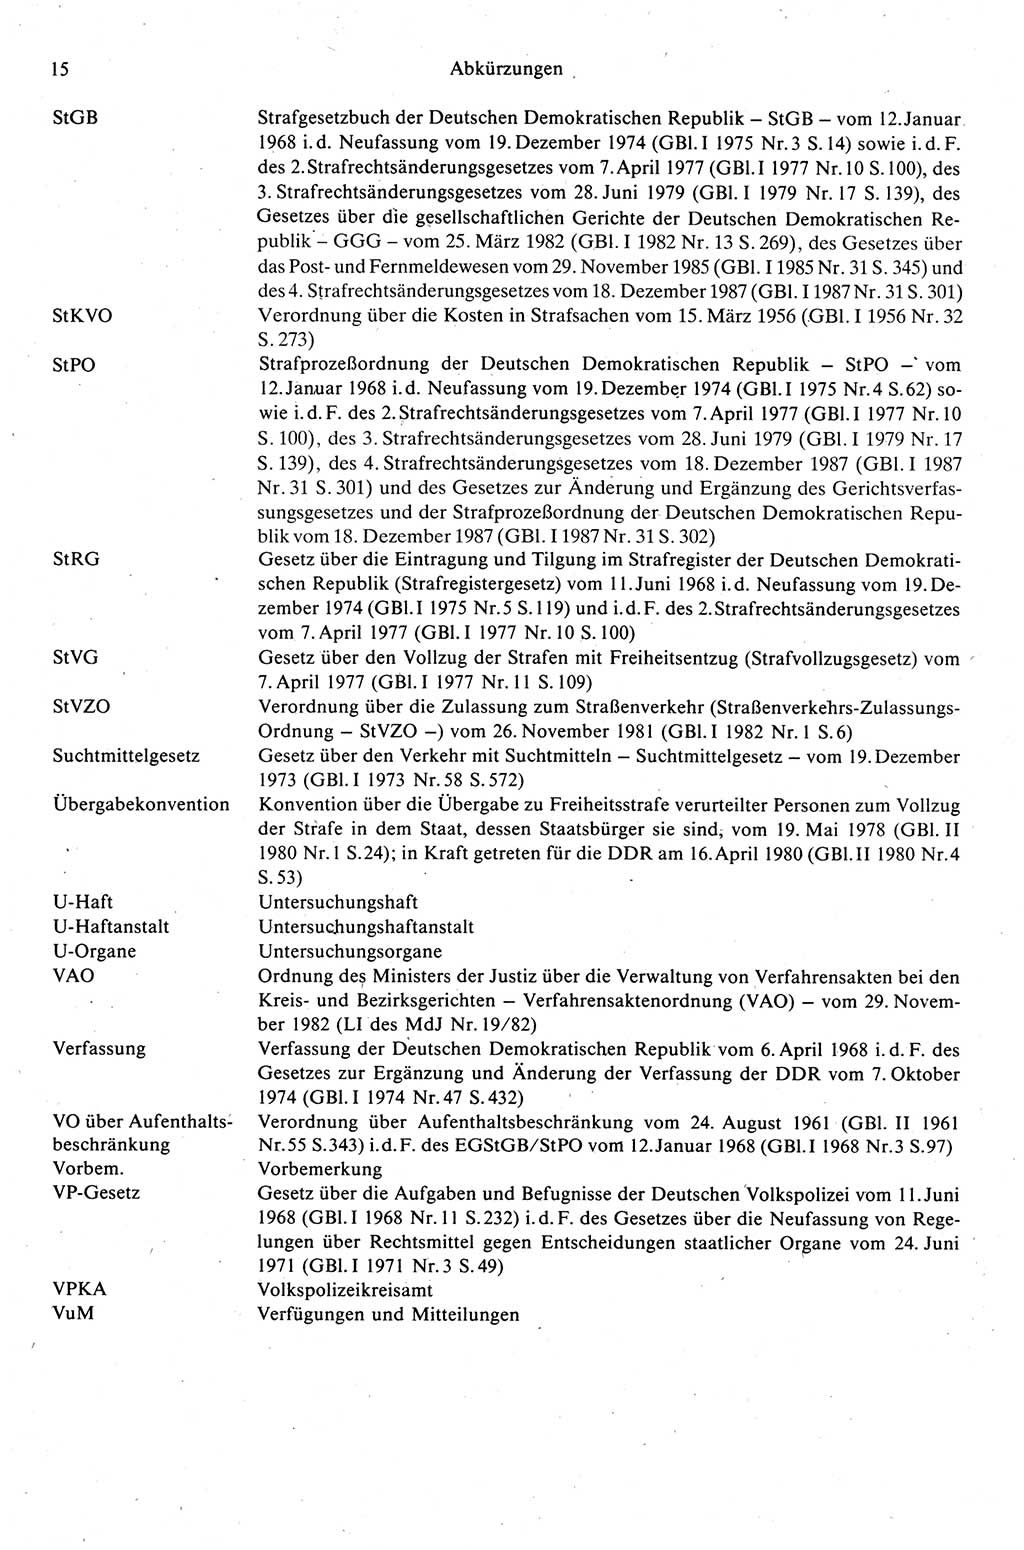 Strafprozeßrecht der DDR (Deutsche Demokratische Republik), Kommentar zur Strafprozeßordnung (StPO) 1989, Seite 15 (Strafprozeßr. DDR Komm. StPO 1989, S. 15)